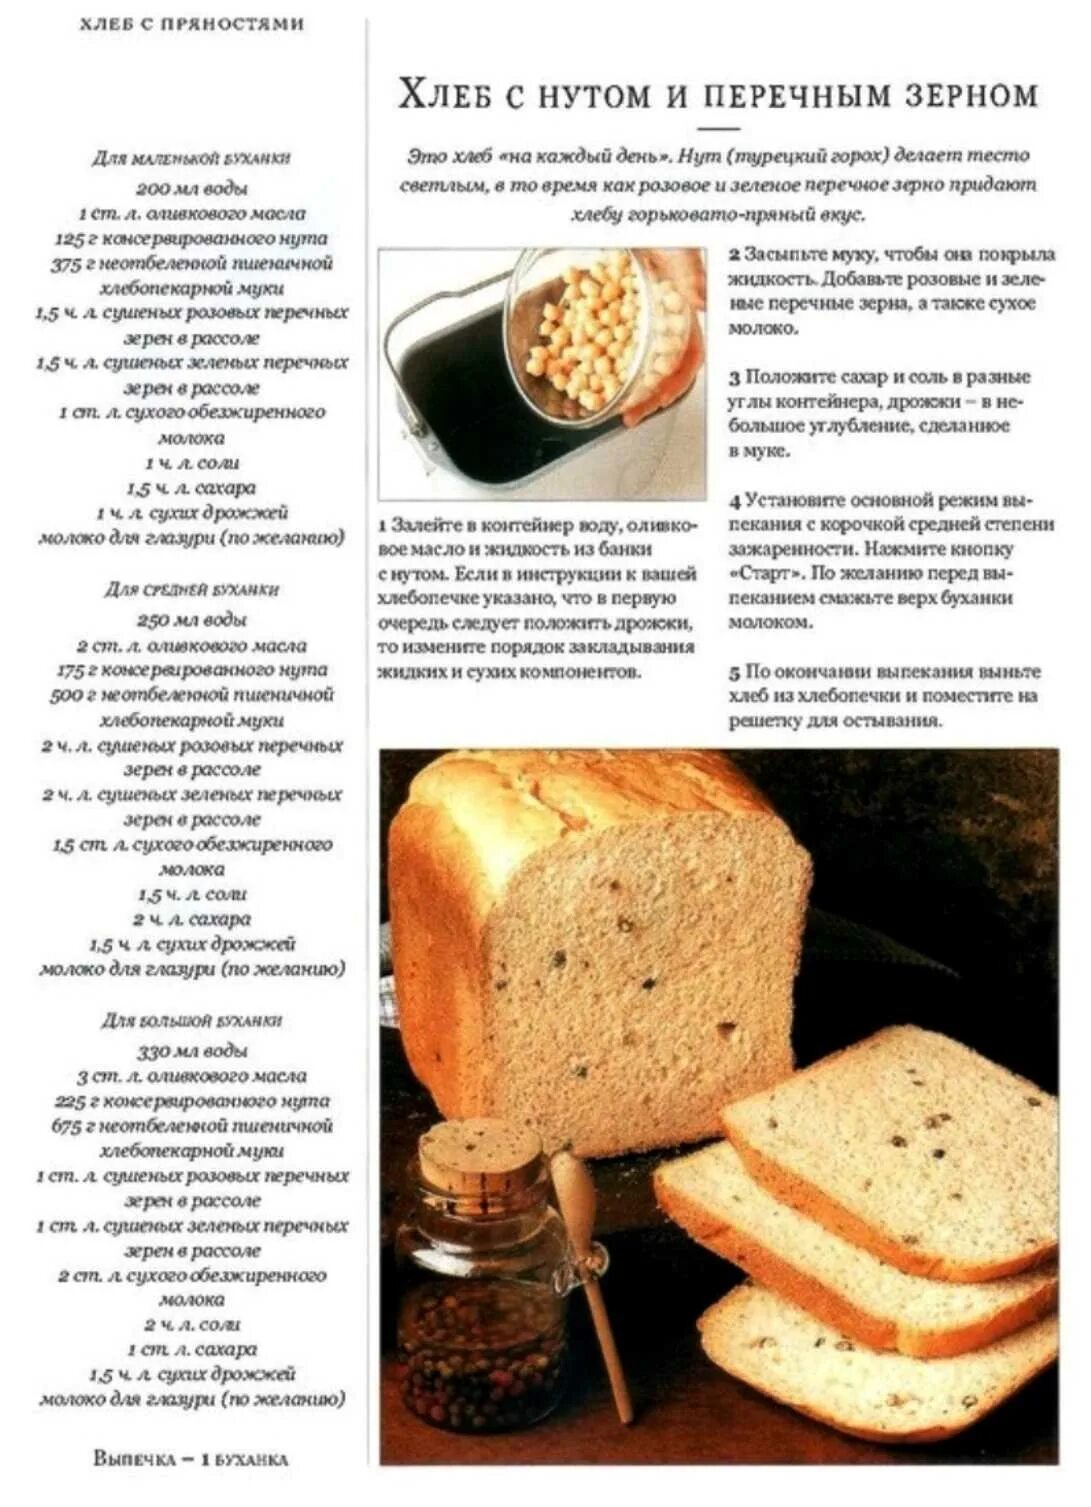 Рецепт хлеба с сахаром. Рецепт хлеба. Выпечка хлеба в хлебопечке-рецепты. Хлеб из хлебопечки. Рецепт хлеба в хлебопечке.